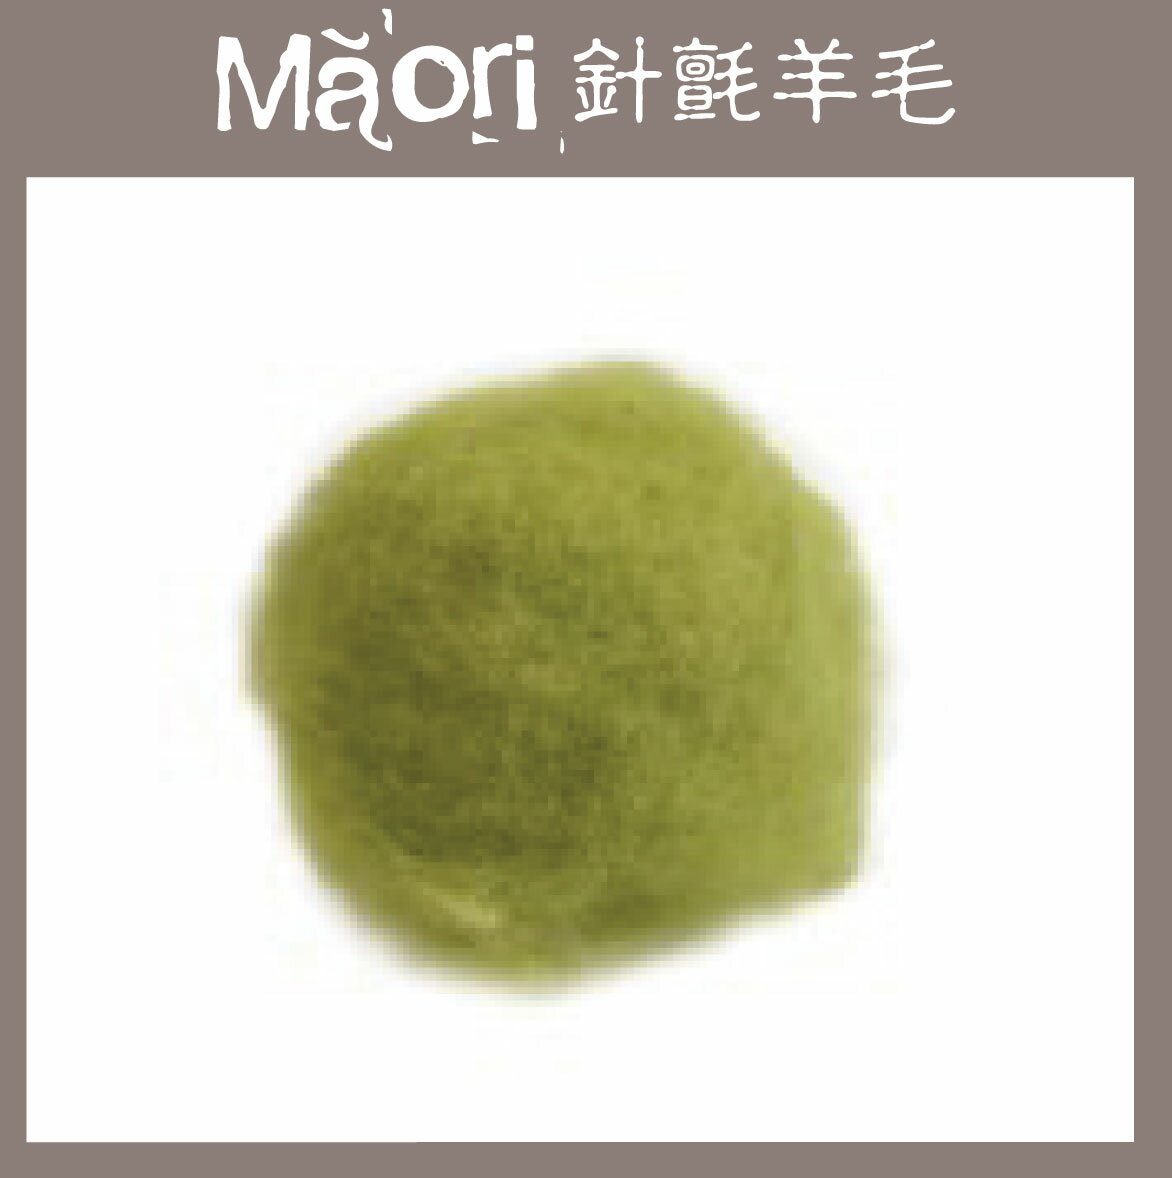 義大利托斯卡尼-Maori針氈羊毛DMR502蘆筍